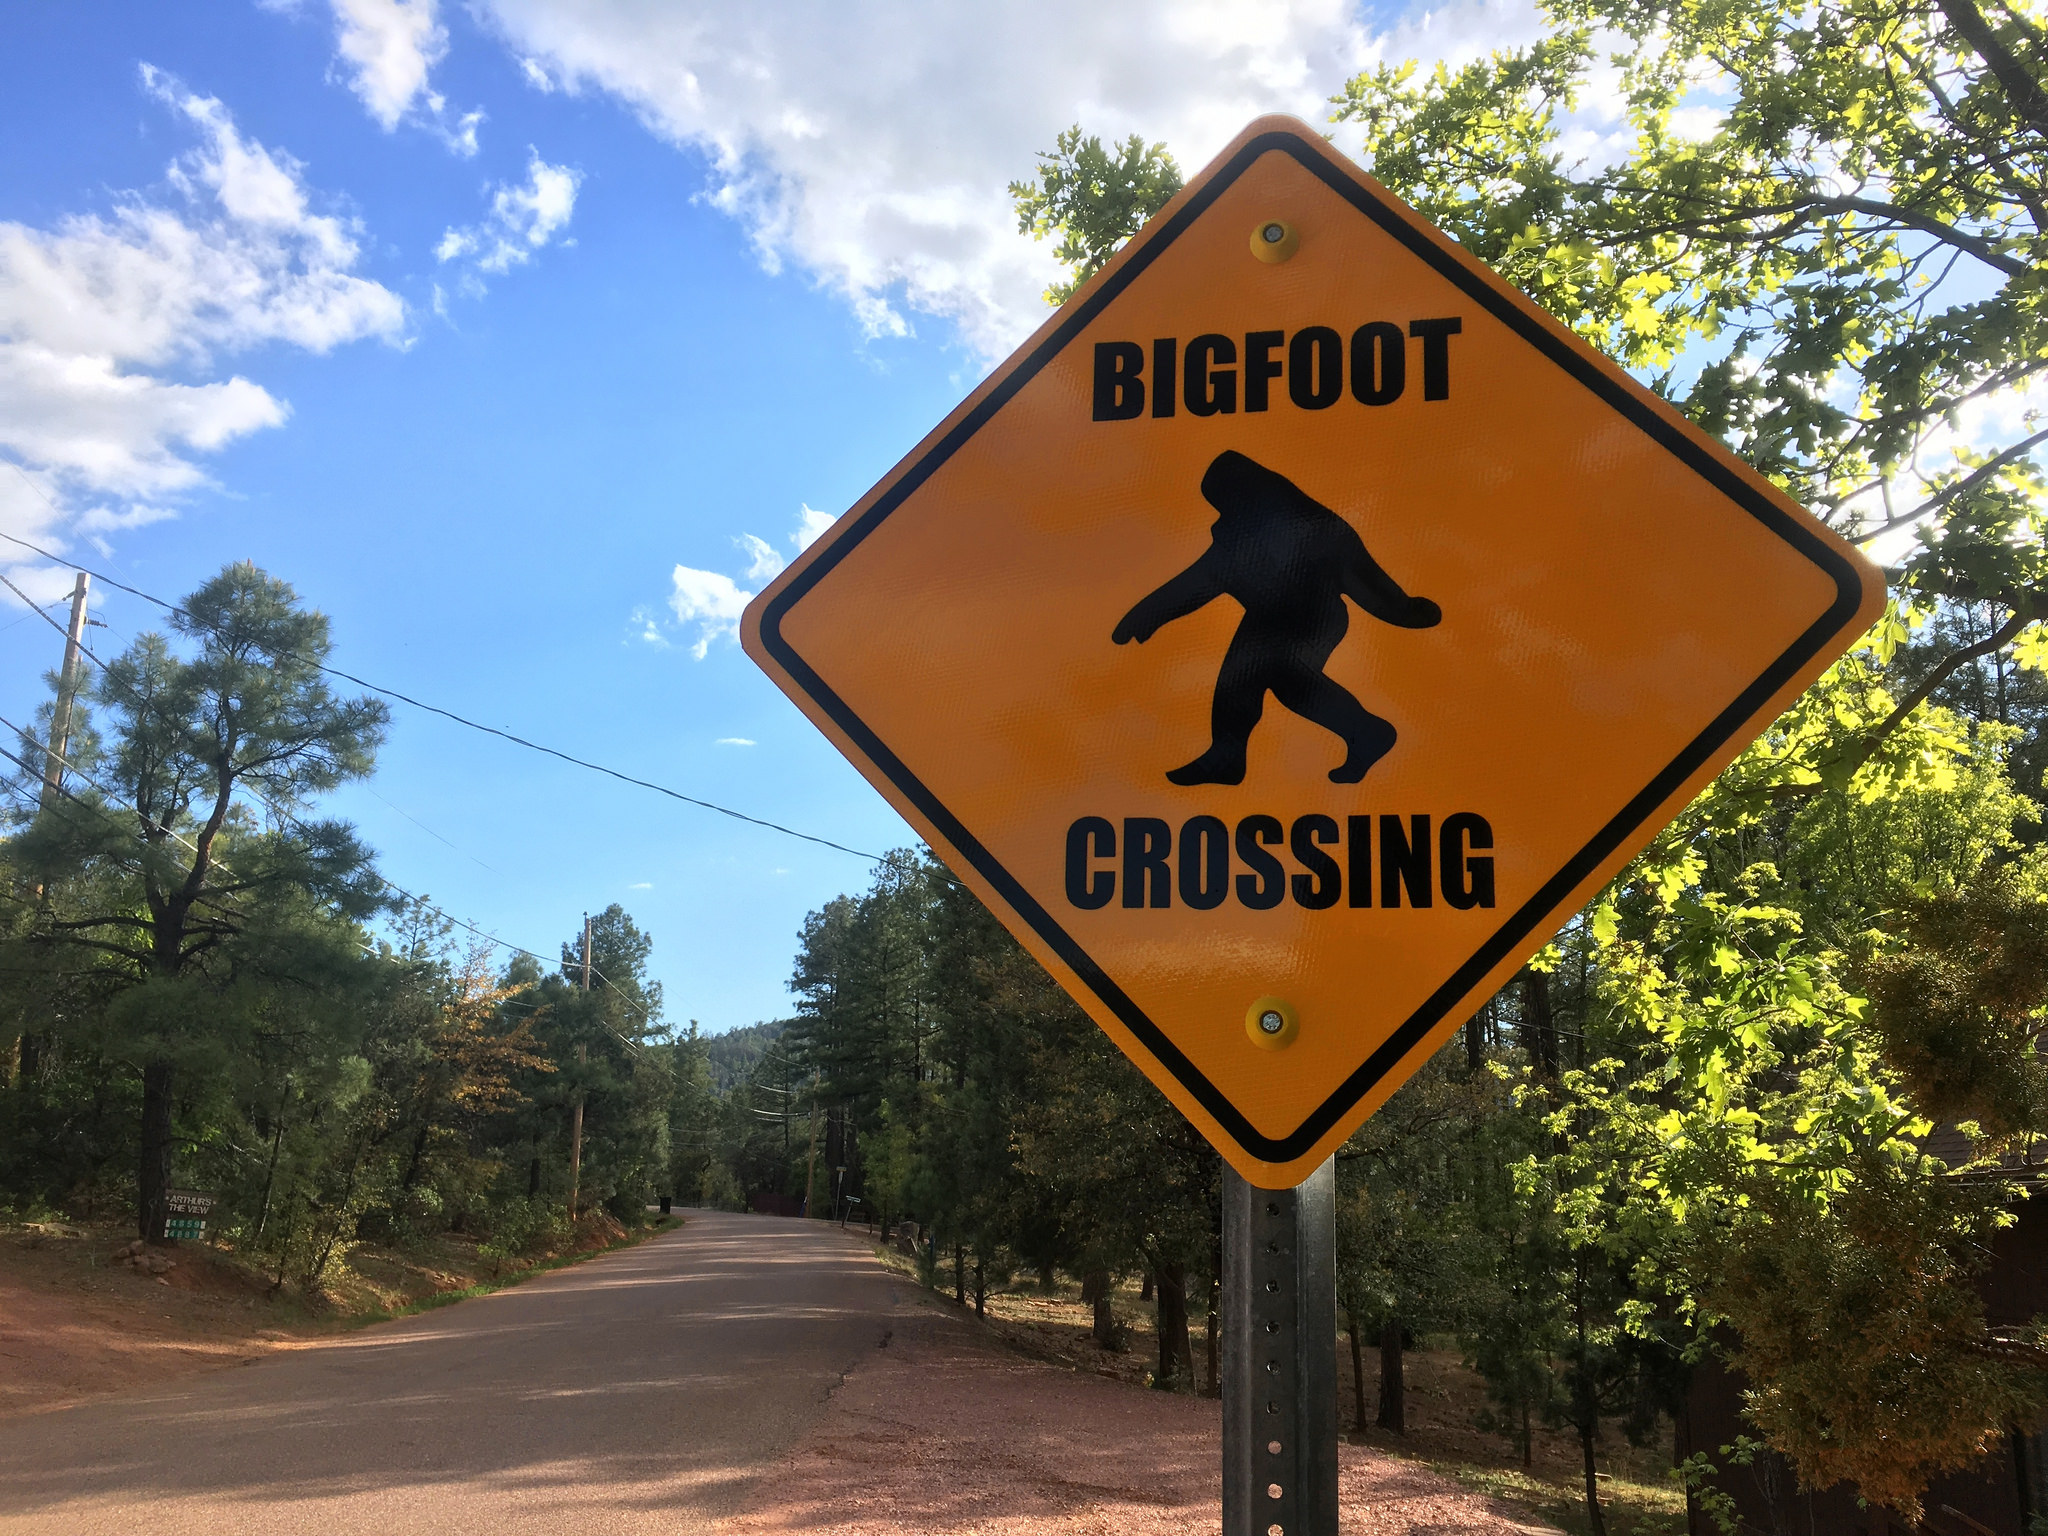 A bigfoot crossing sign